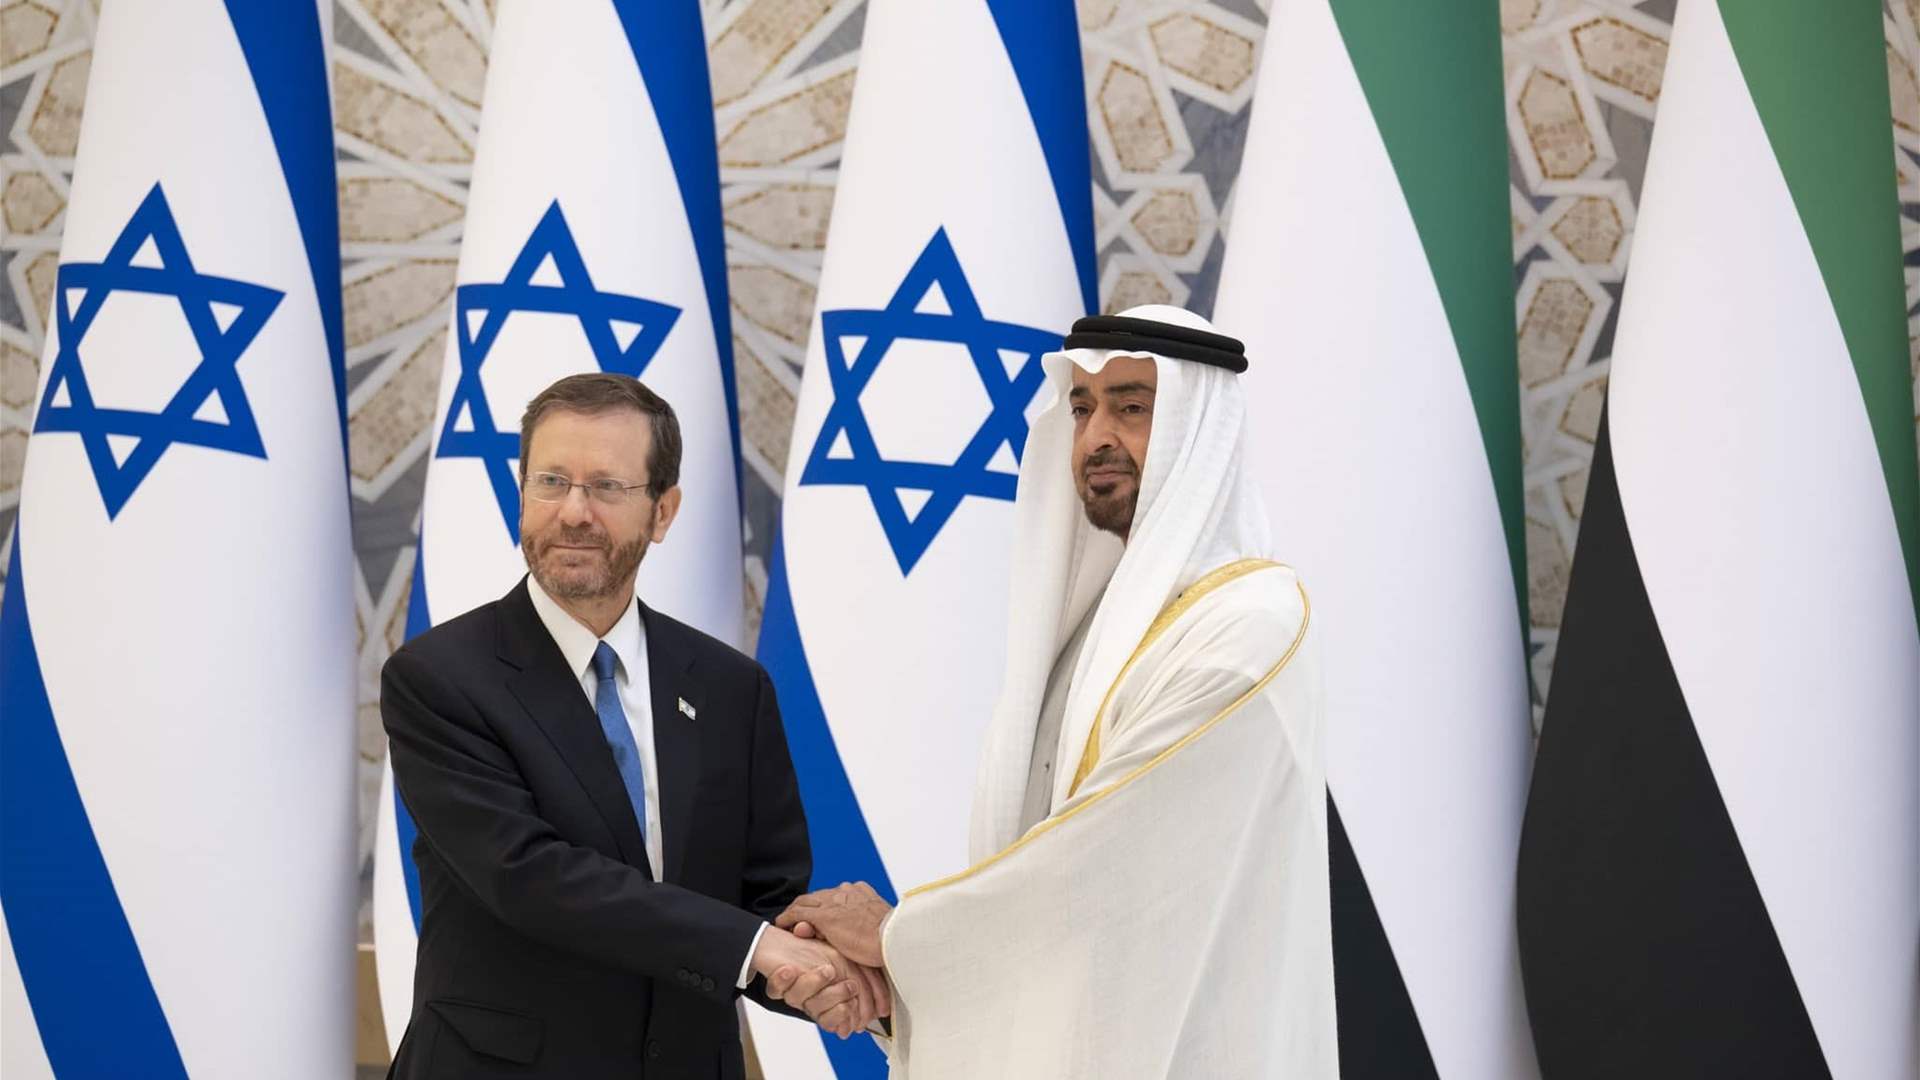 الرئيس الإسرائيلي يبحث مع نظيره الإماراتي مسألة الرهائن على هامش مؤتمر كوب28 في دبي